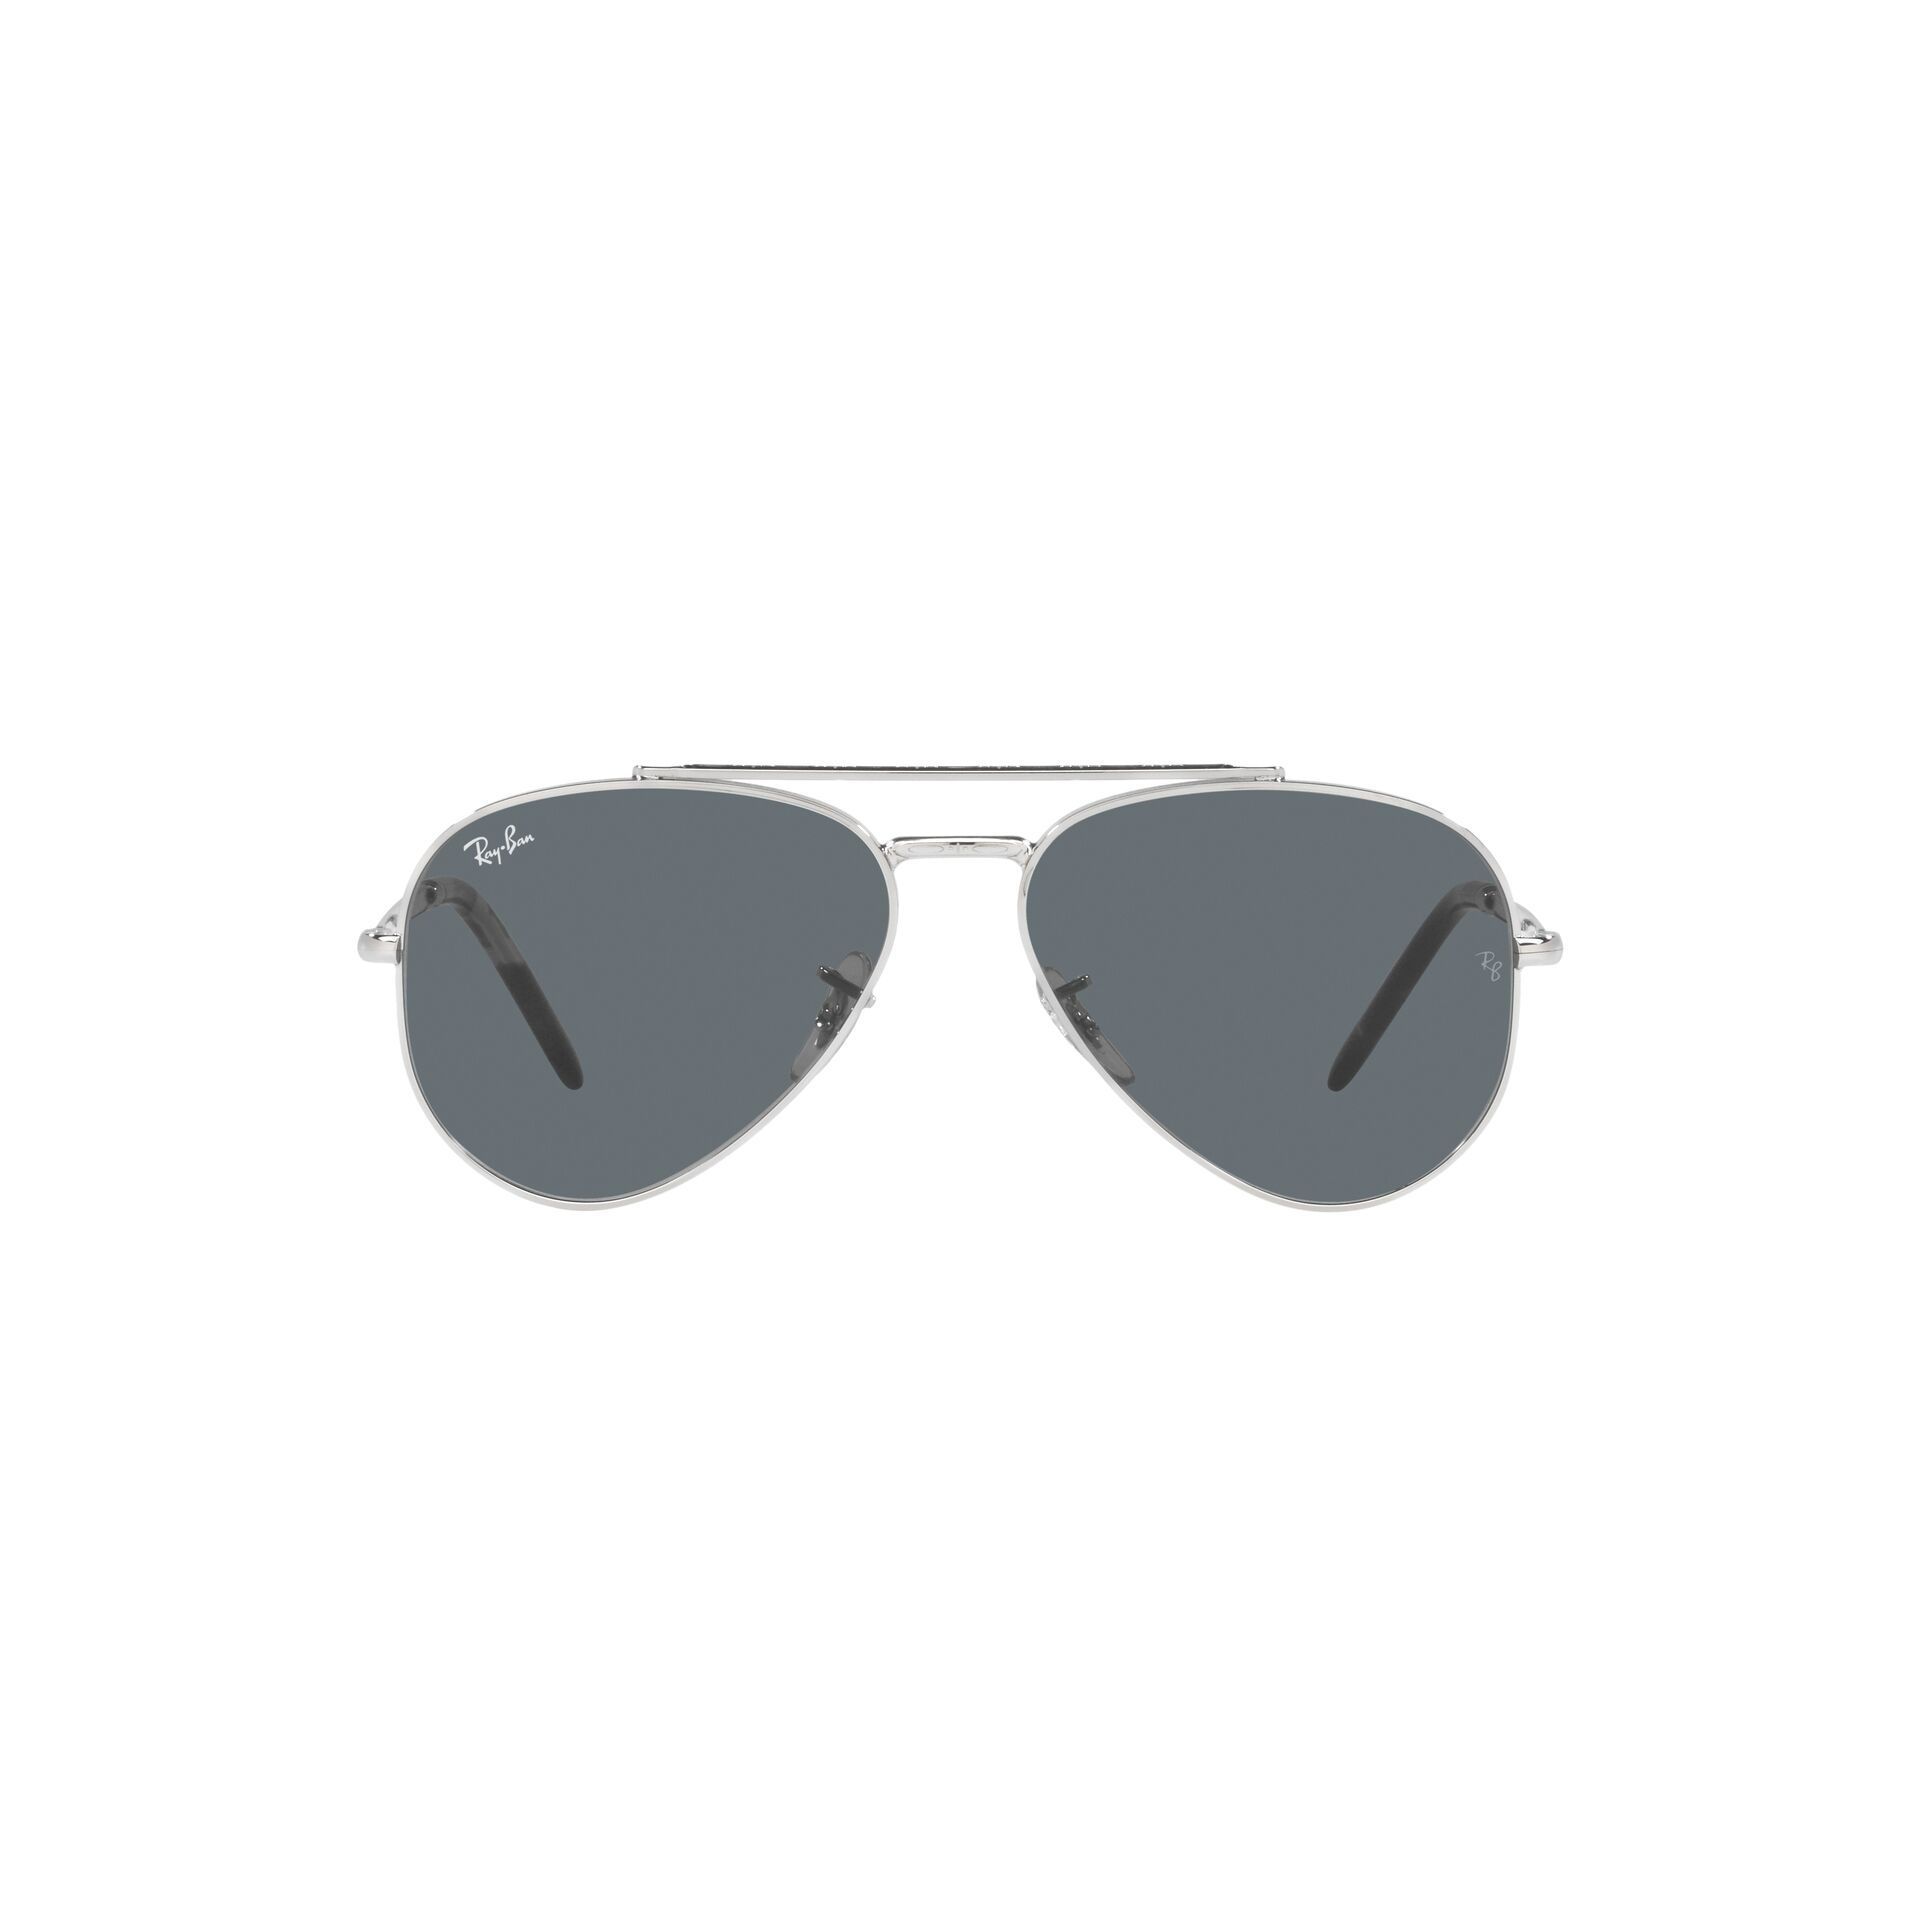 RB3625 Pilot Sunglasses 003 R5 - size 58